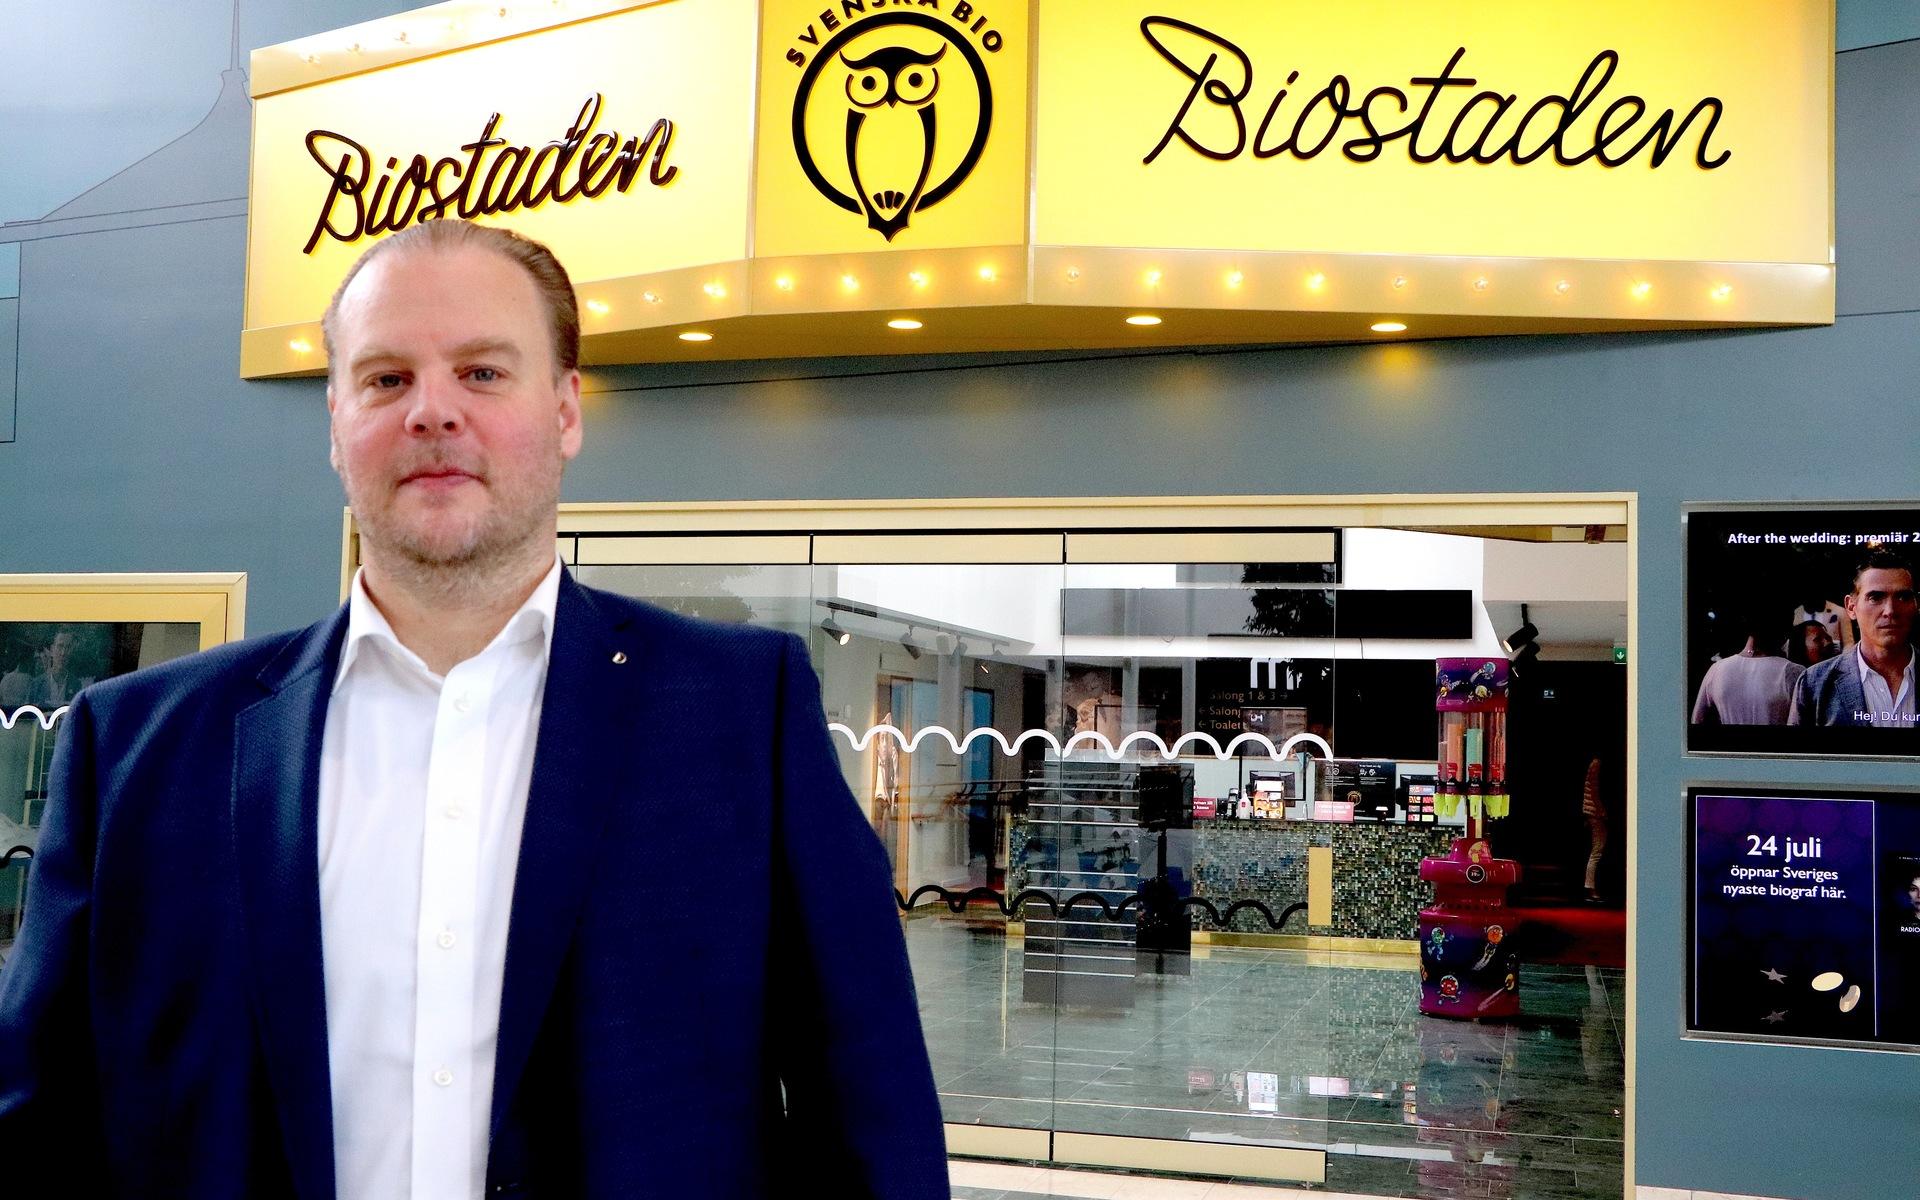 Michael Kristiansson, föreståndare på Biostaden Kungsbacka säger att man inte har några planer på att införa något förbud mot medtaget snacks i Kungsbacka.